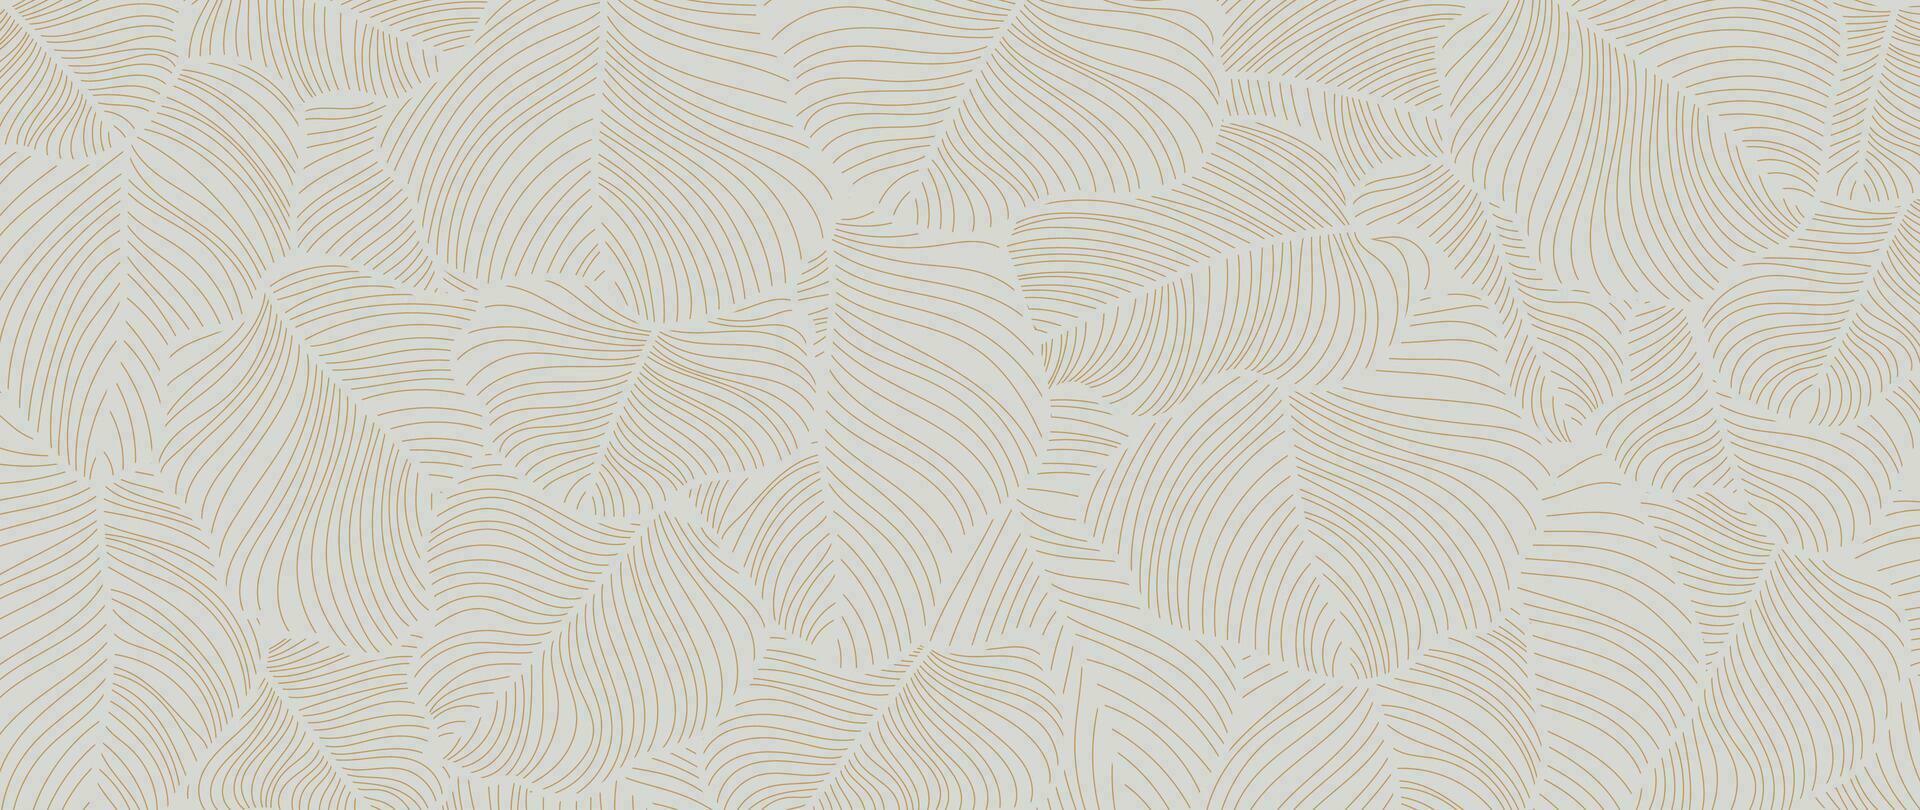 abstract gebladerte lijn kunst vector achtergrond. blad behang van tropisch bladeren, blad tak, planten in hand- getrokken patroon. botanisch oerwoud geïllustreerd voor banier, afdrukken, decoratie, kleding stof.